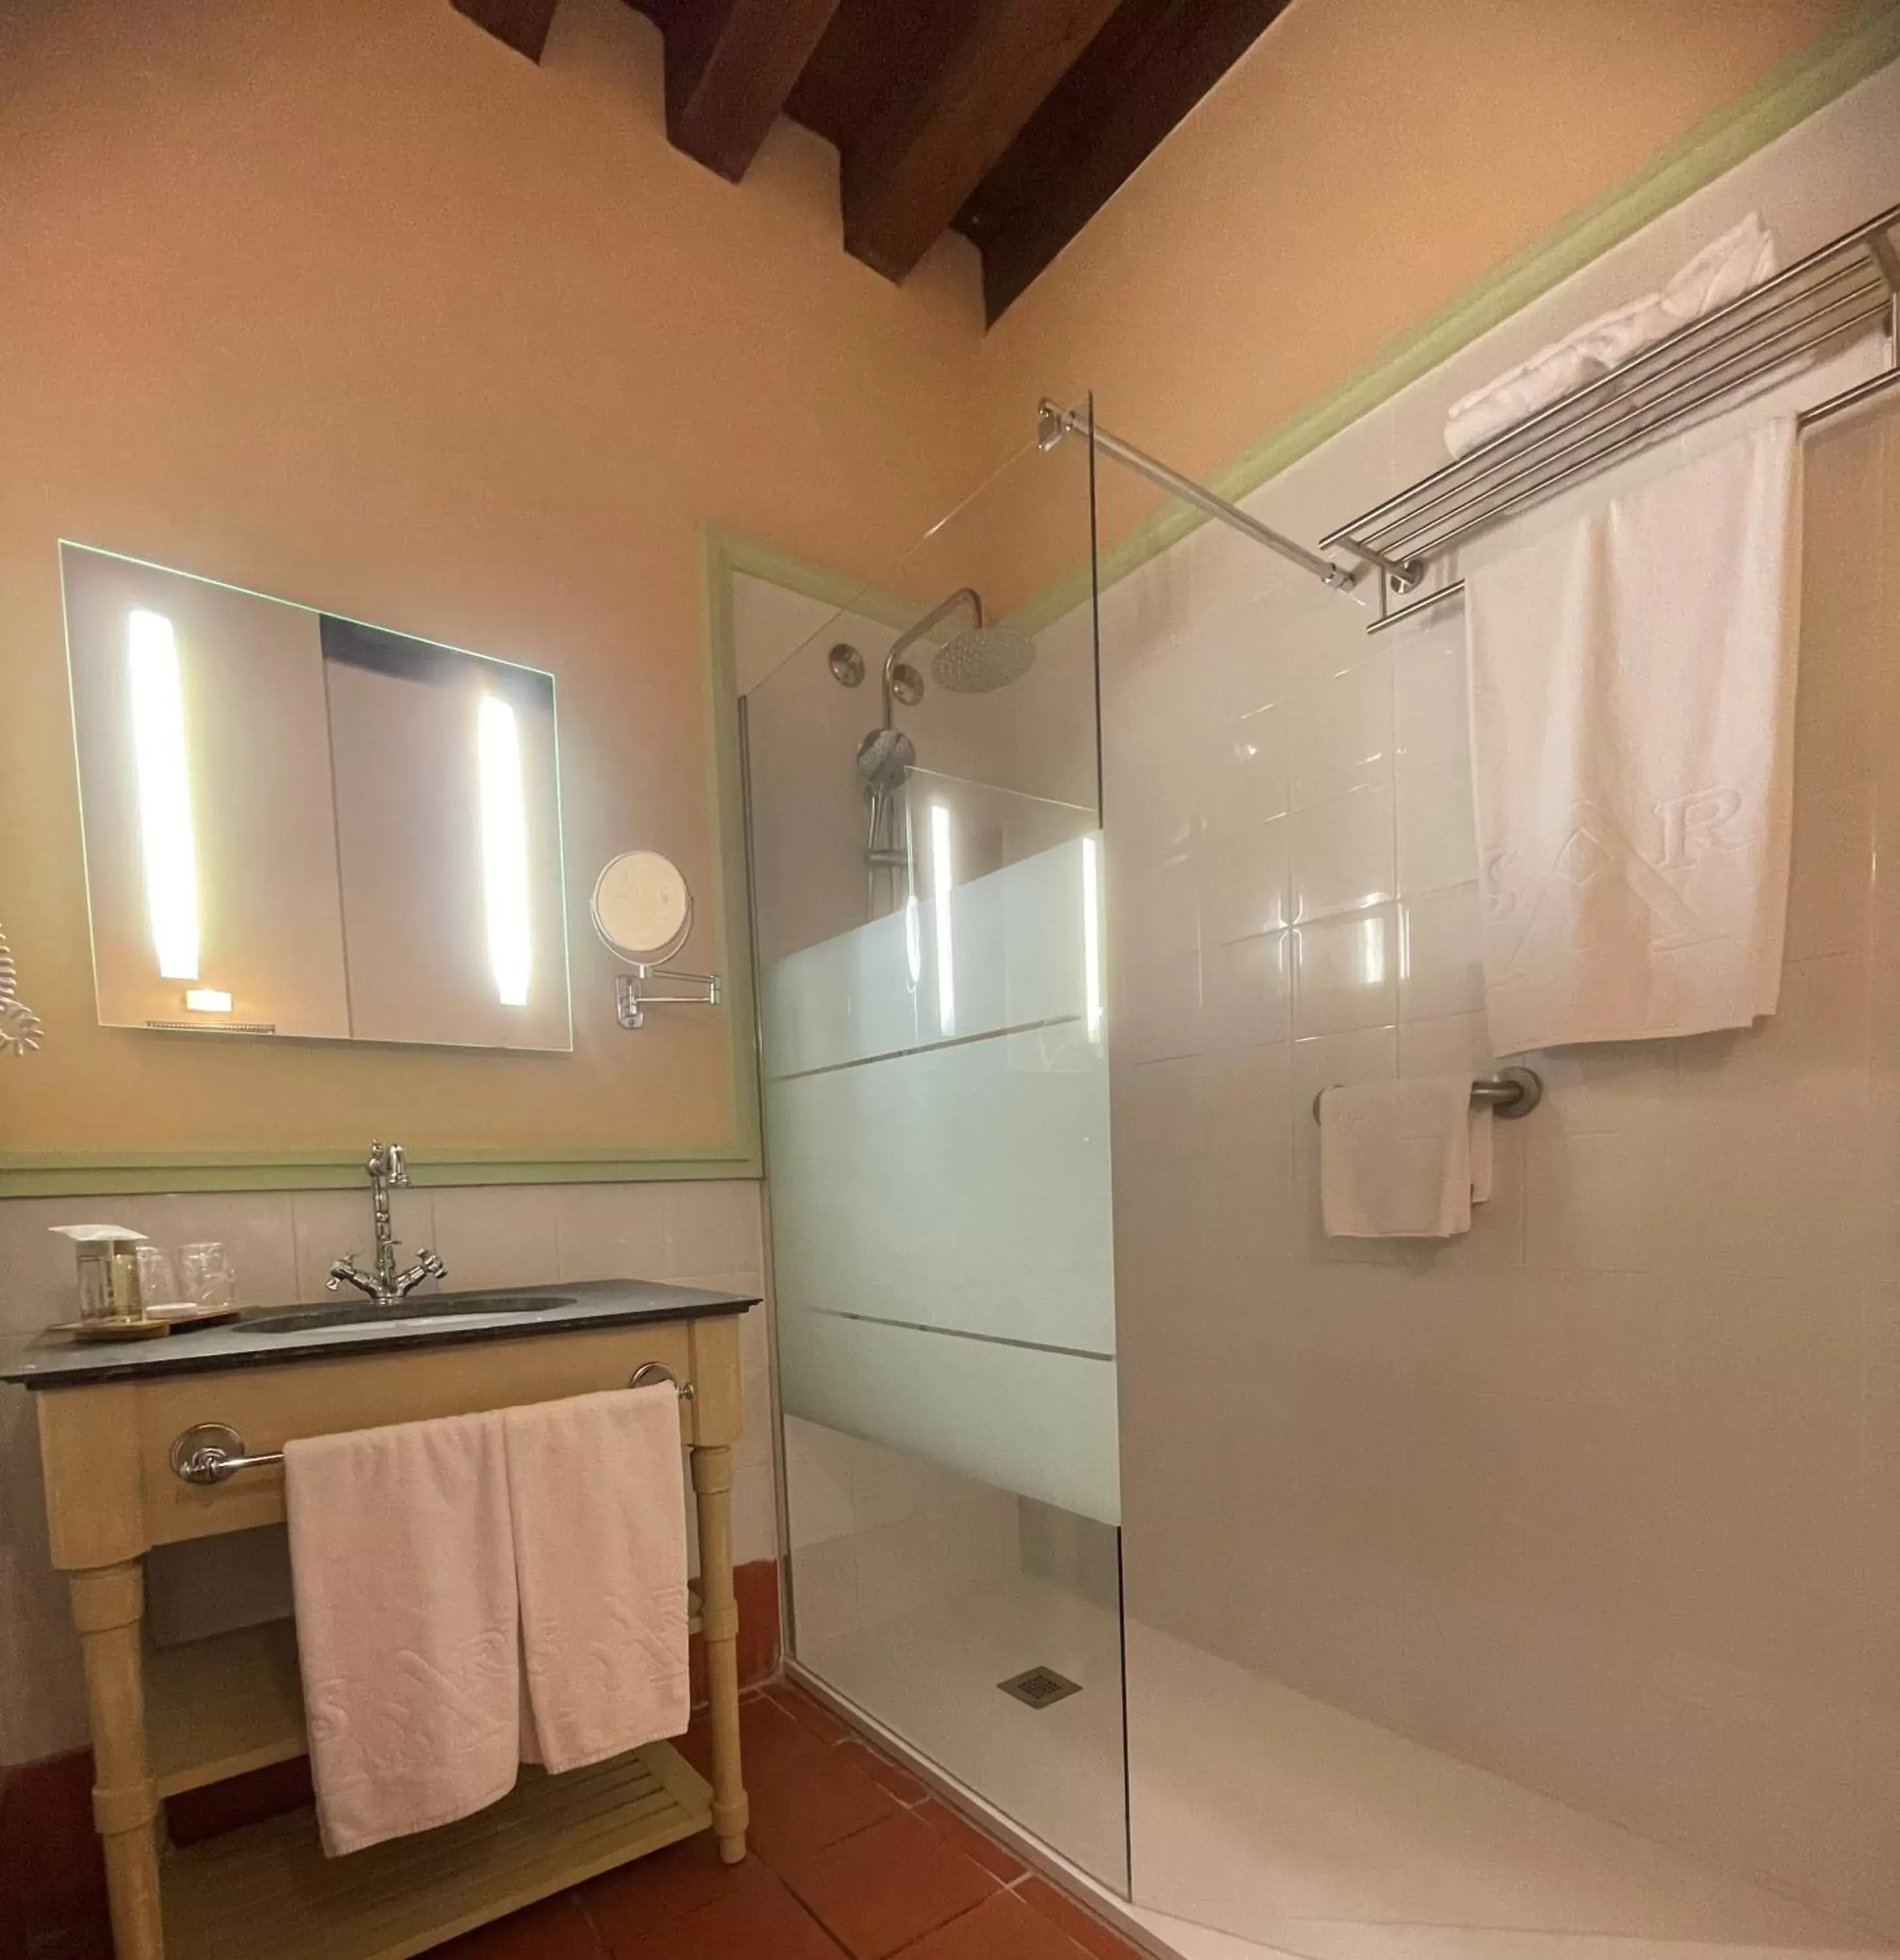 Property building, Bathroom in Hotel San Antonio el Real